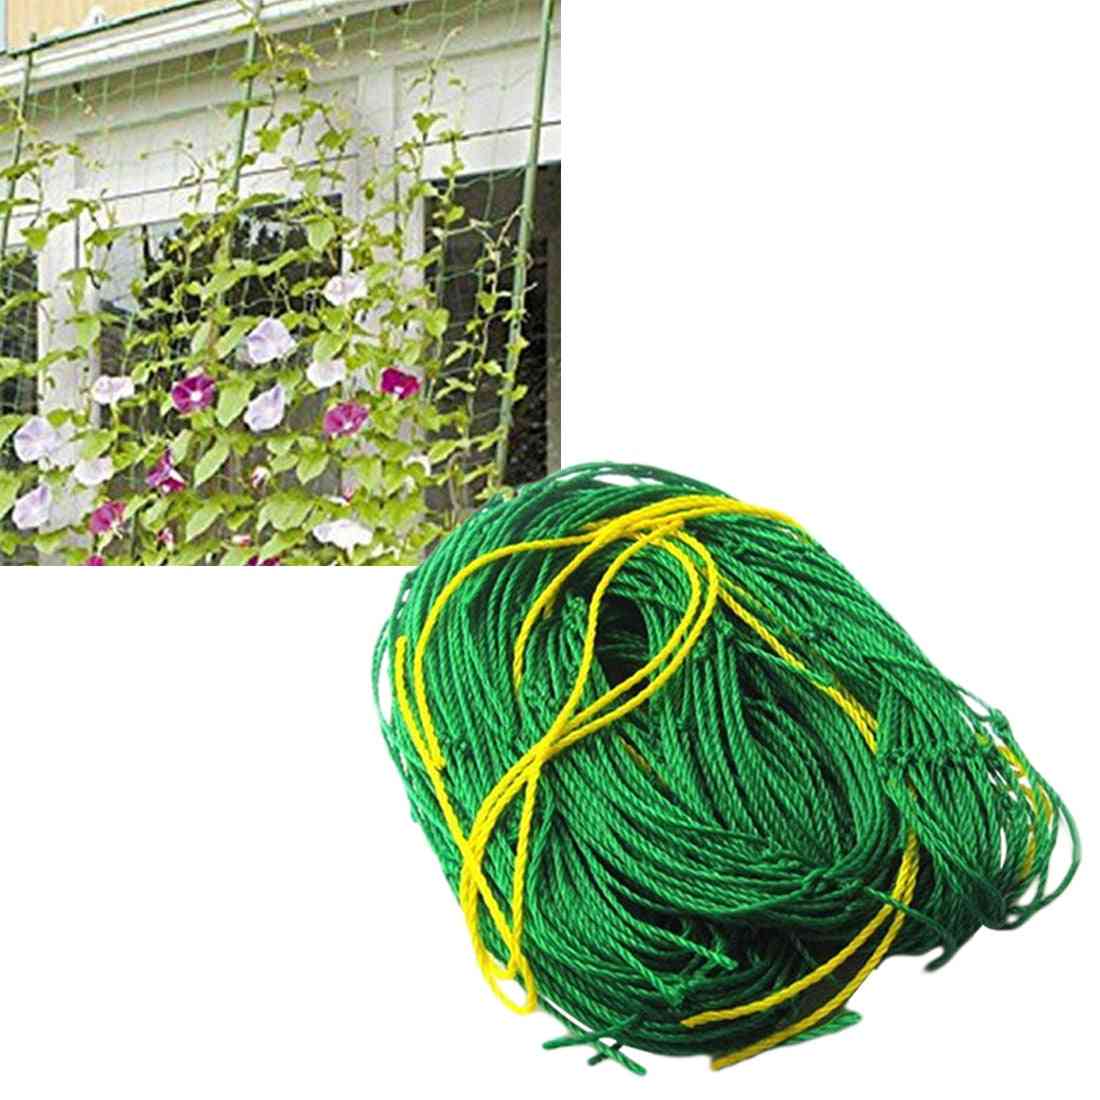 Garden Fence Millipore Nylon Net, Climbing Frame Gardening Net